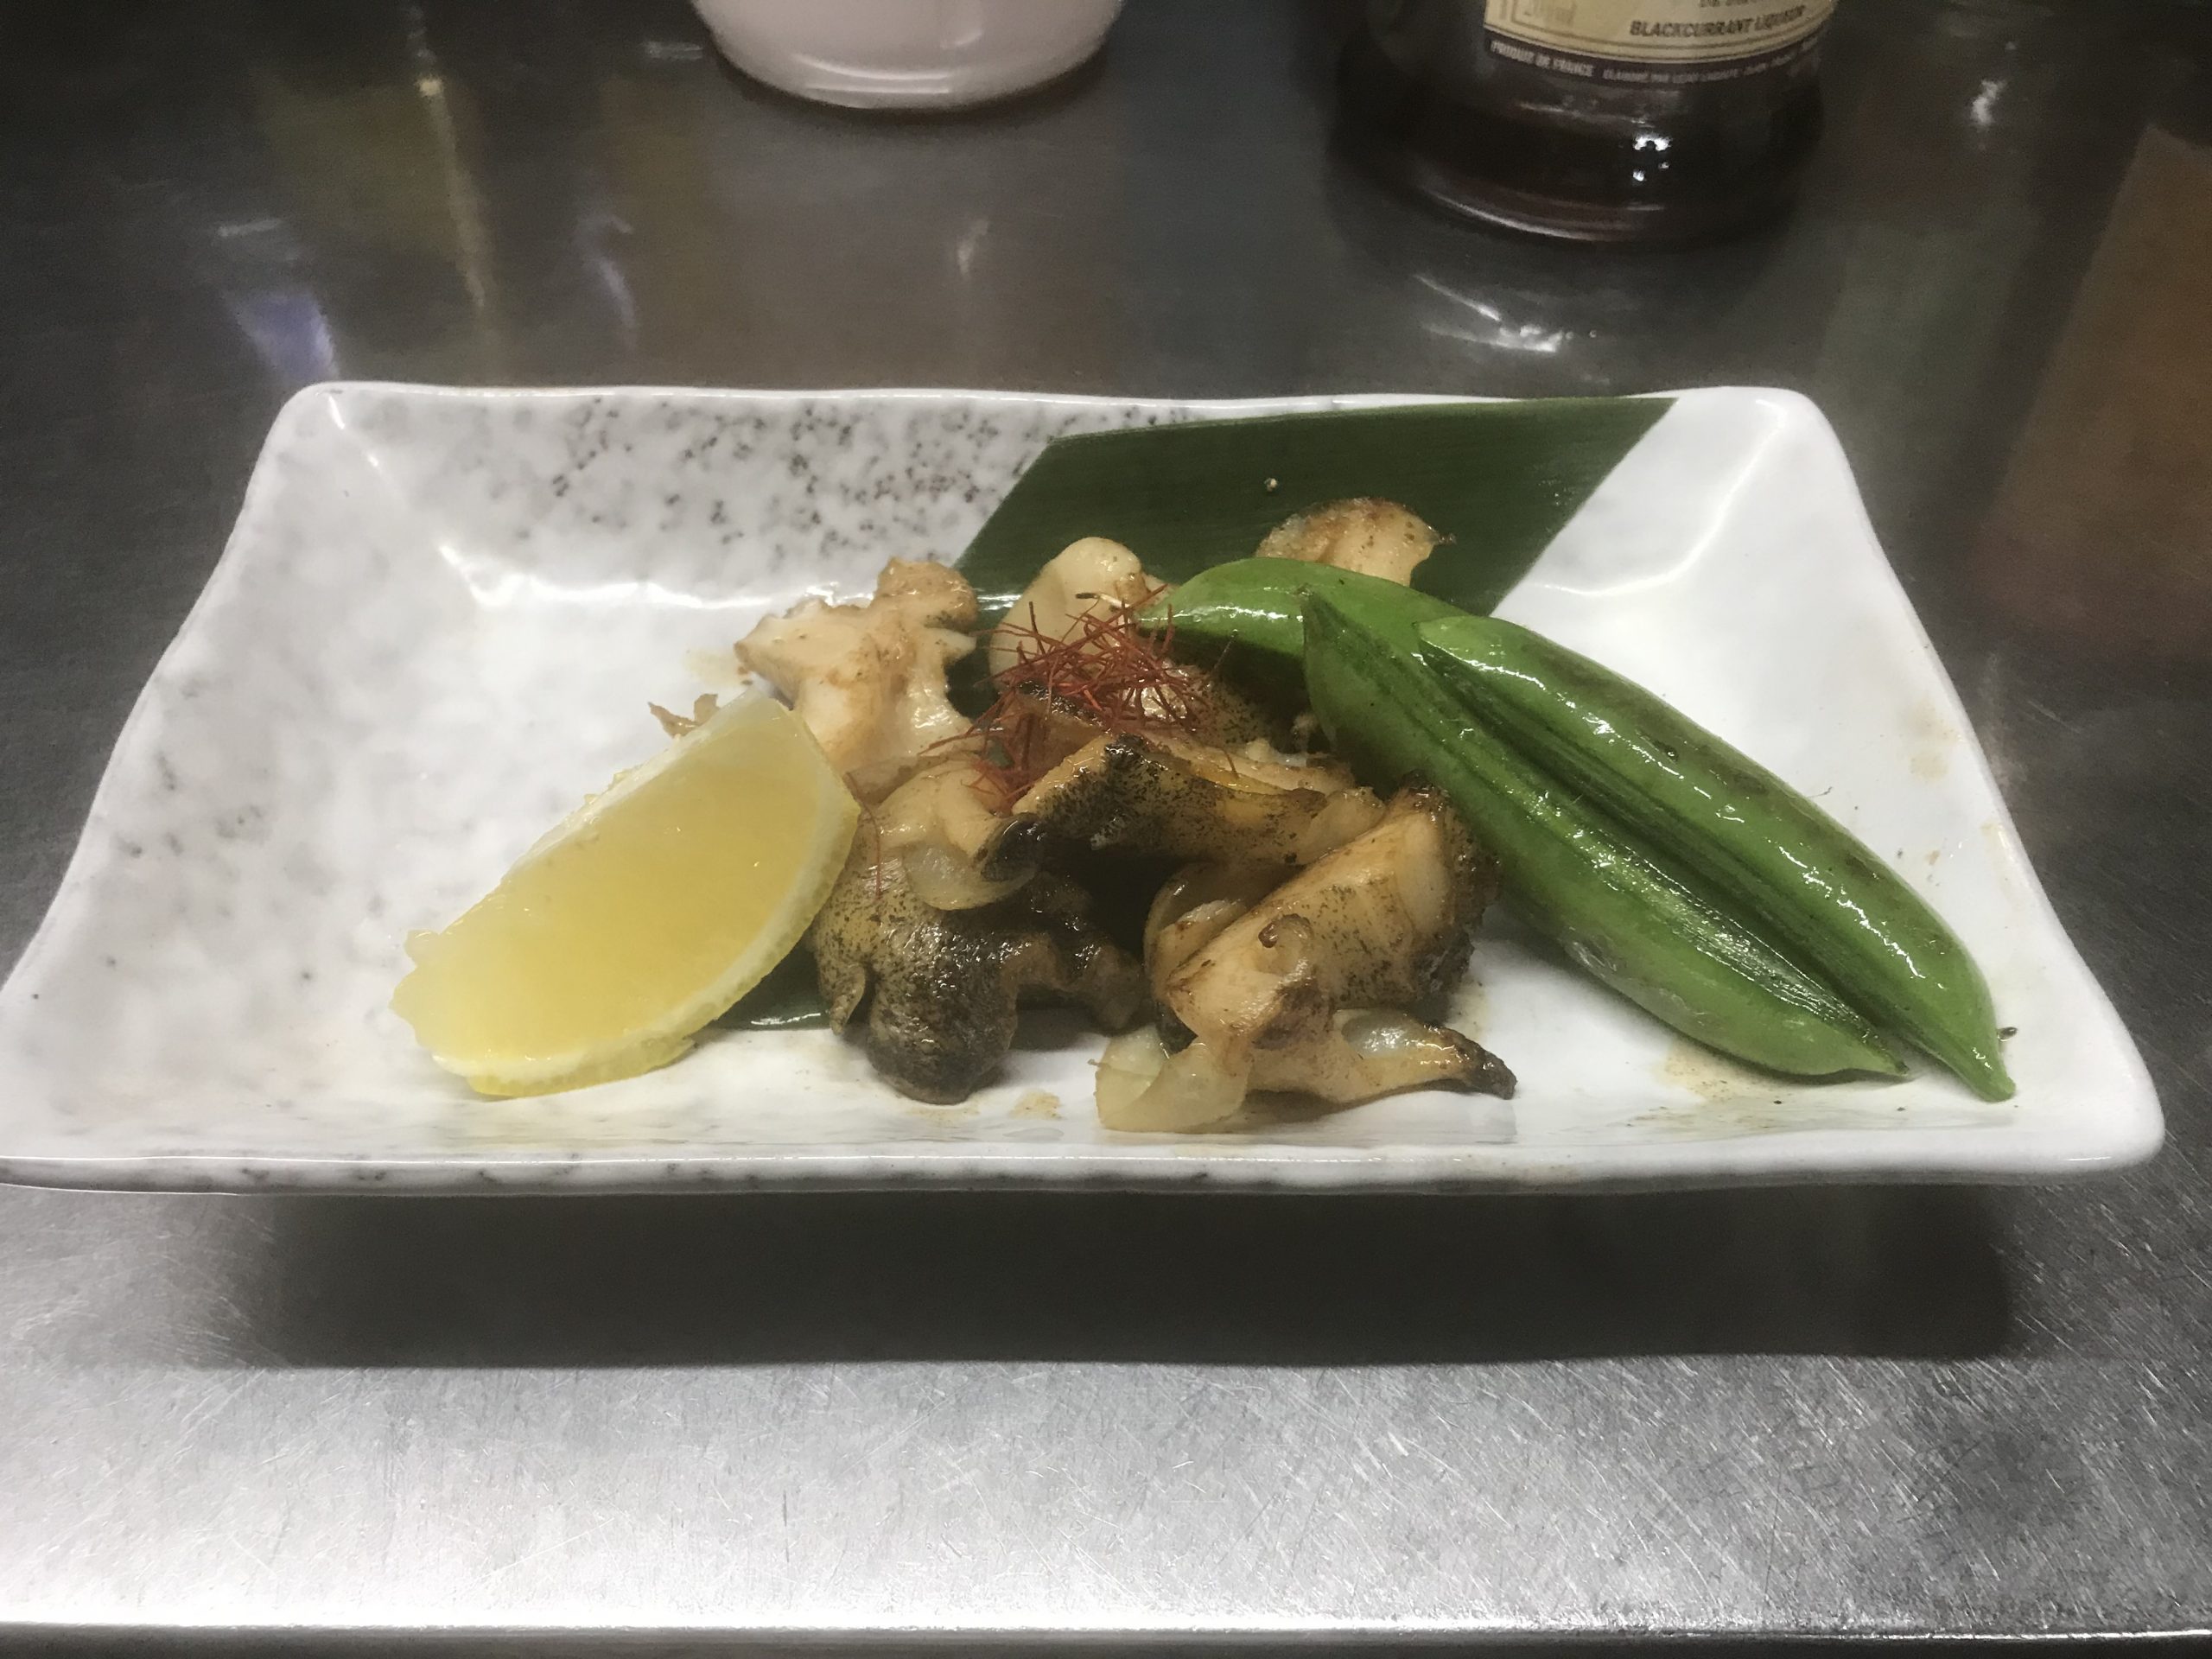 ツブ貝バター醤油炒め 海の恵み 食の底力 Japan 公式レシピサイト